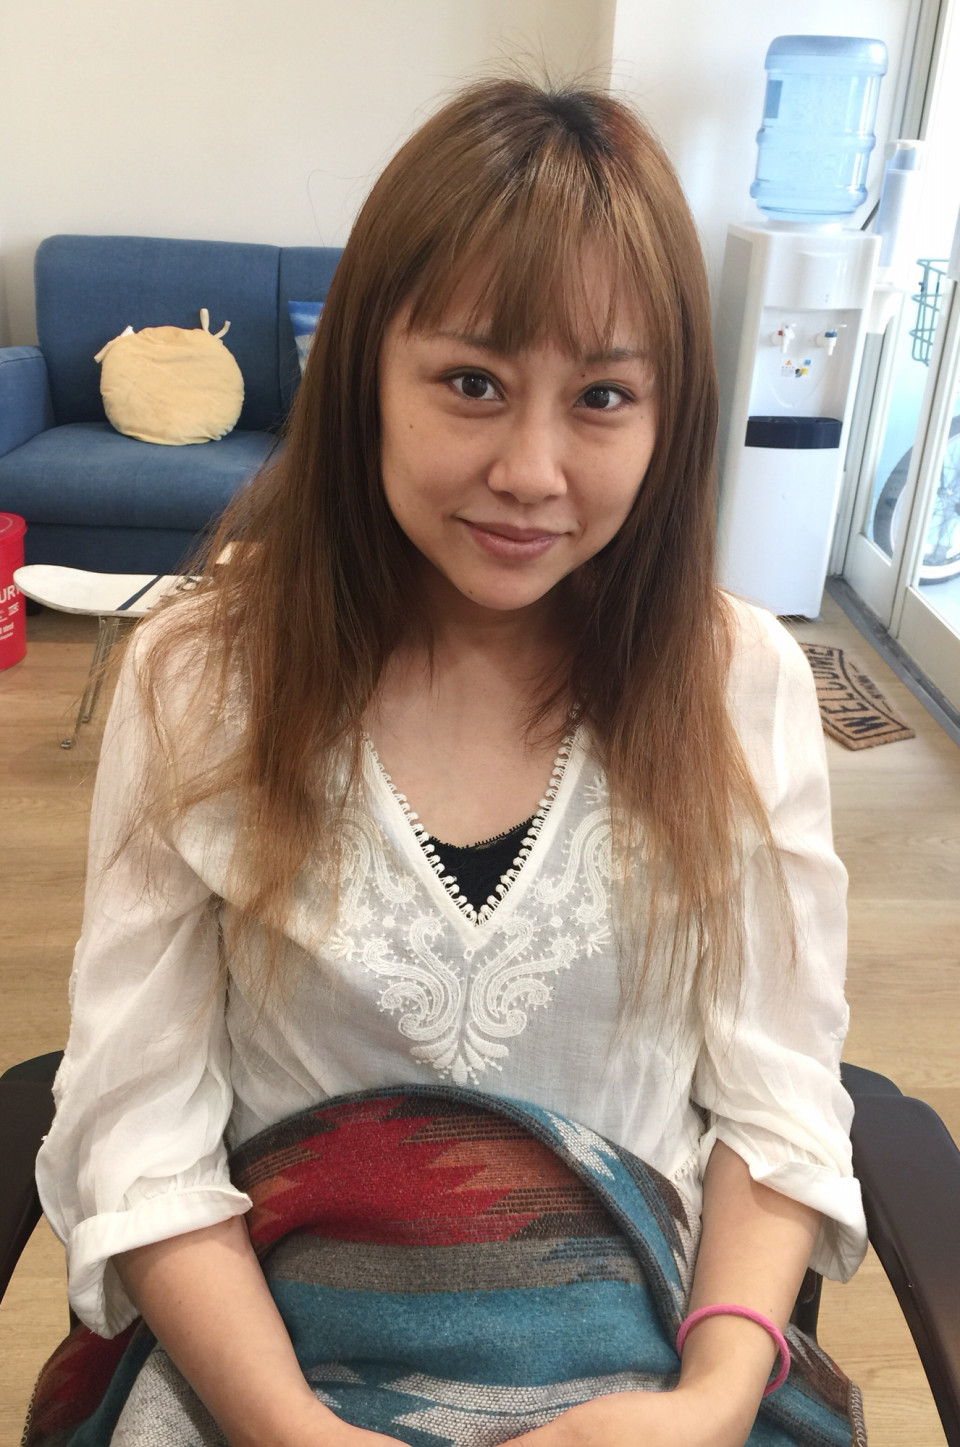 邑野みあ の 画像 写真 日本一美味しい鉄板焼 トレラボ 芸能人やアイドル 有名人の話題の画像や写真を徹底まとめ トレラボ